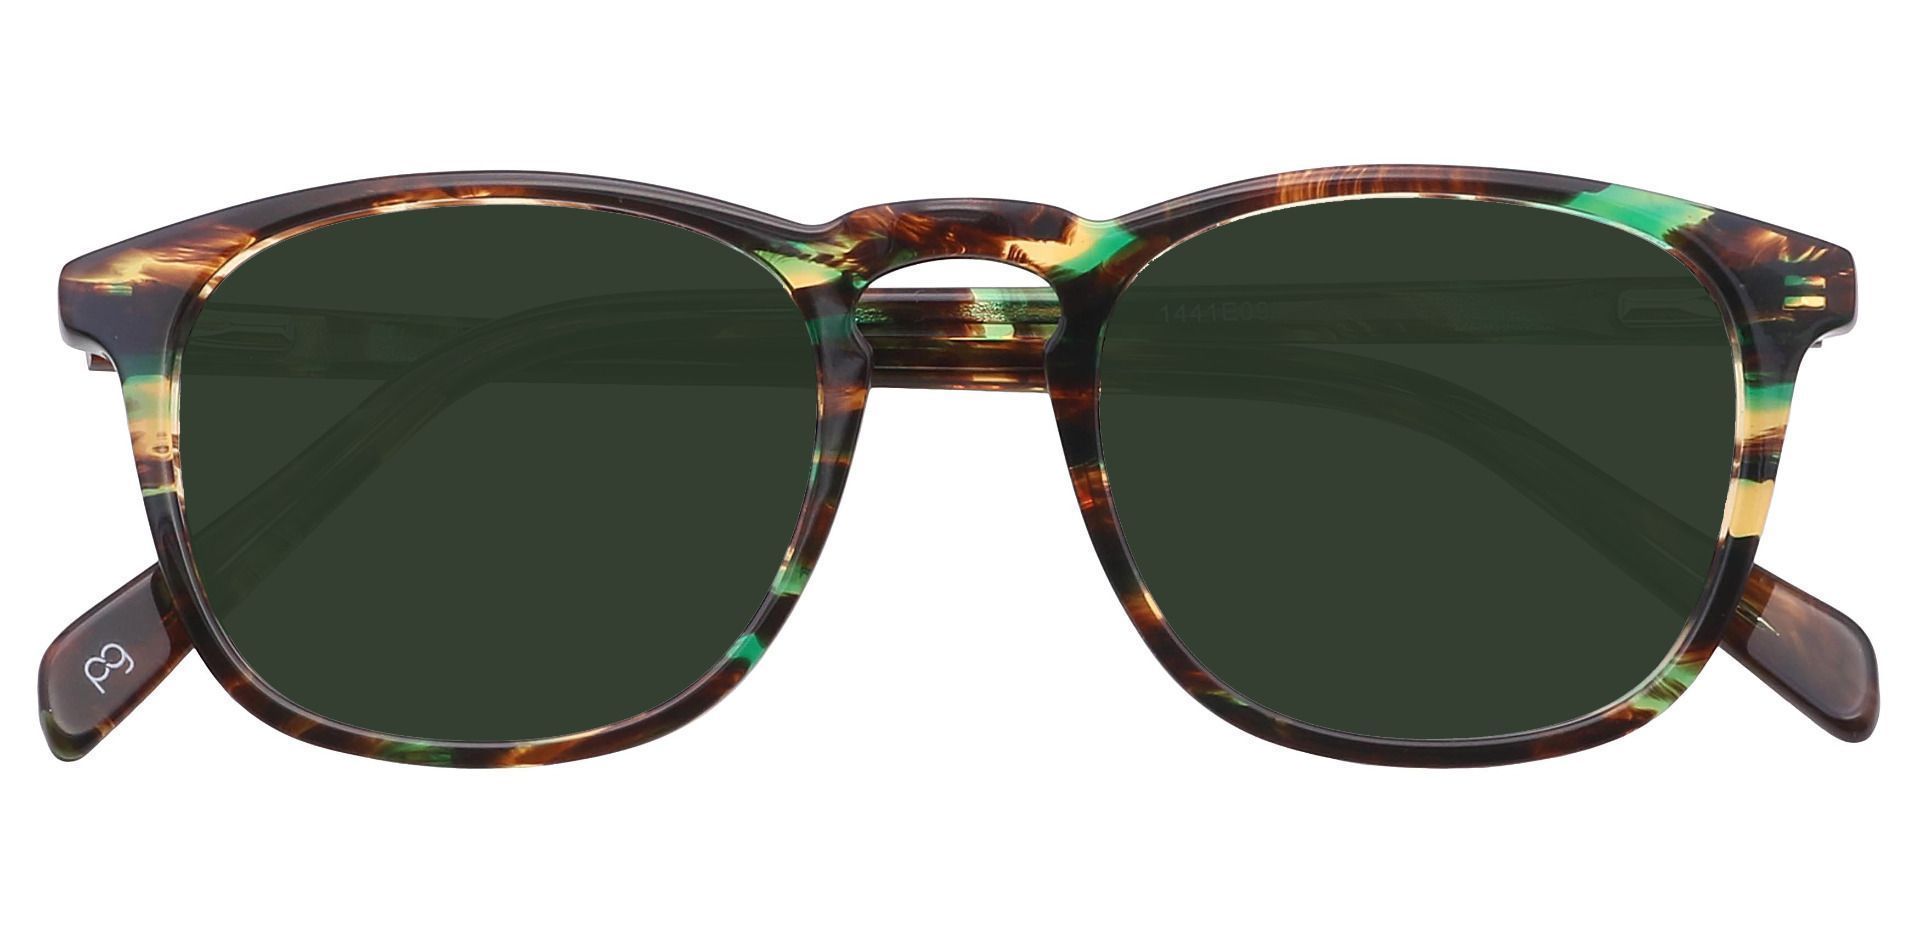 Venti Square Prescription Sunglasses - Green Frame With Green Lenses